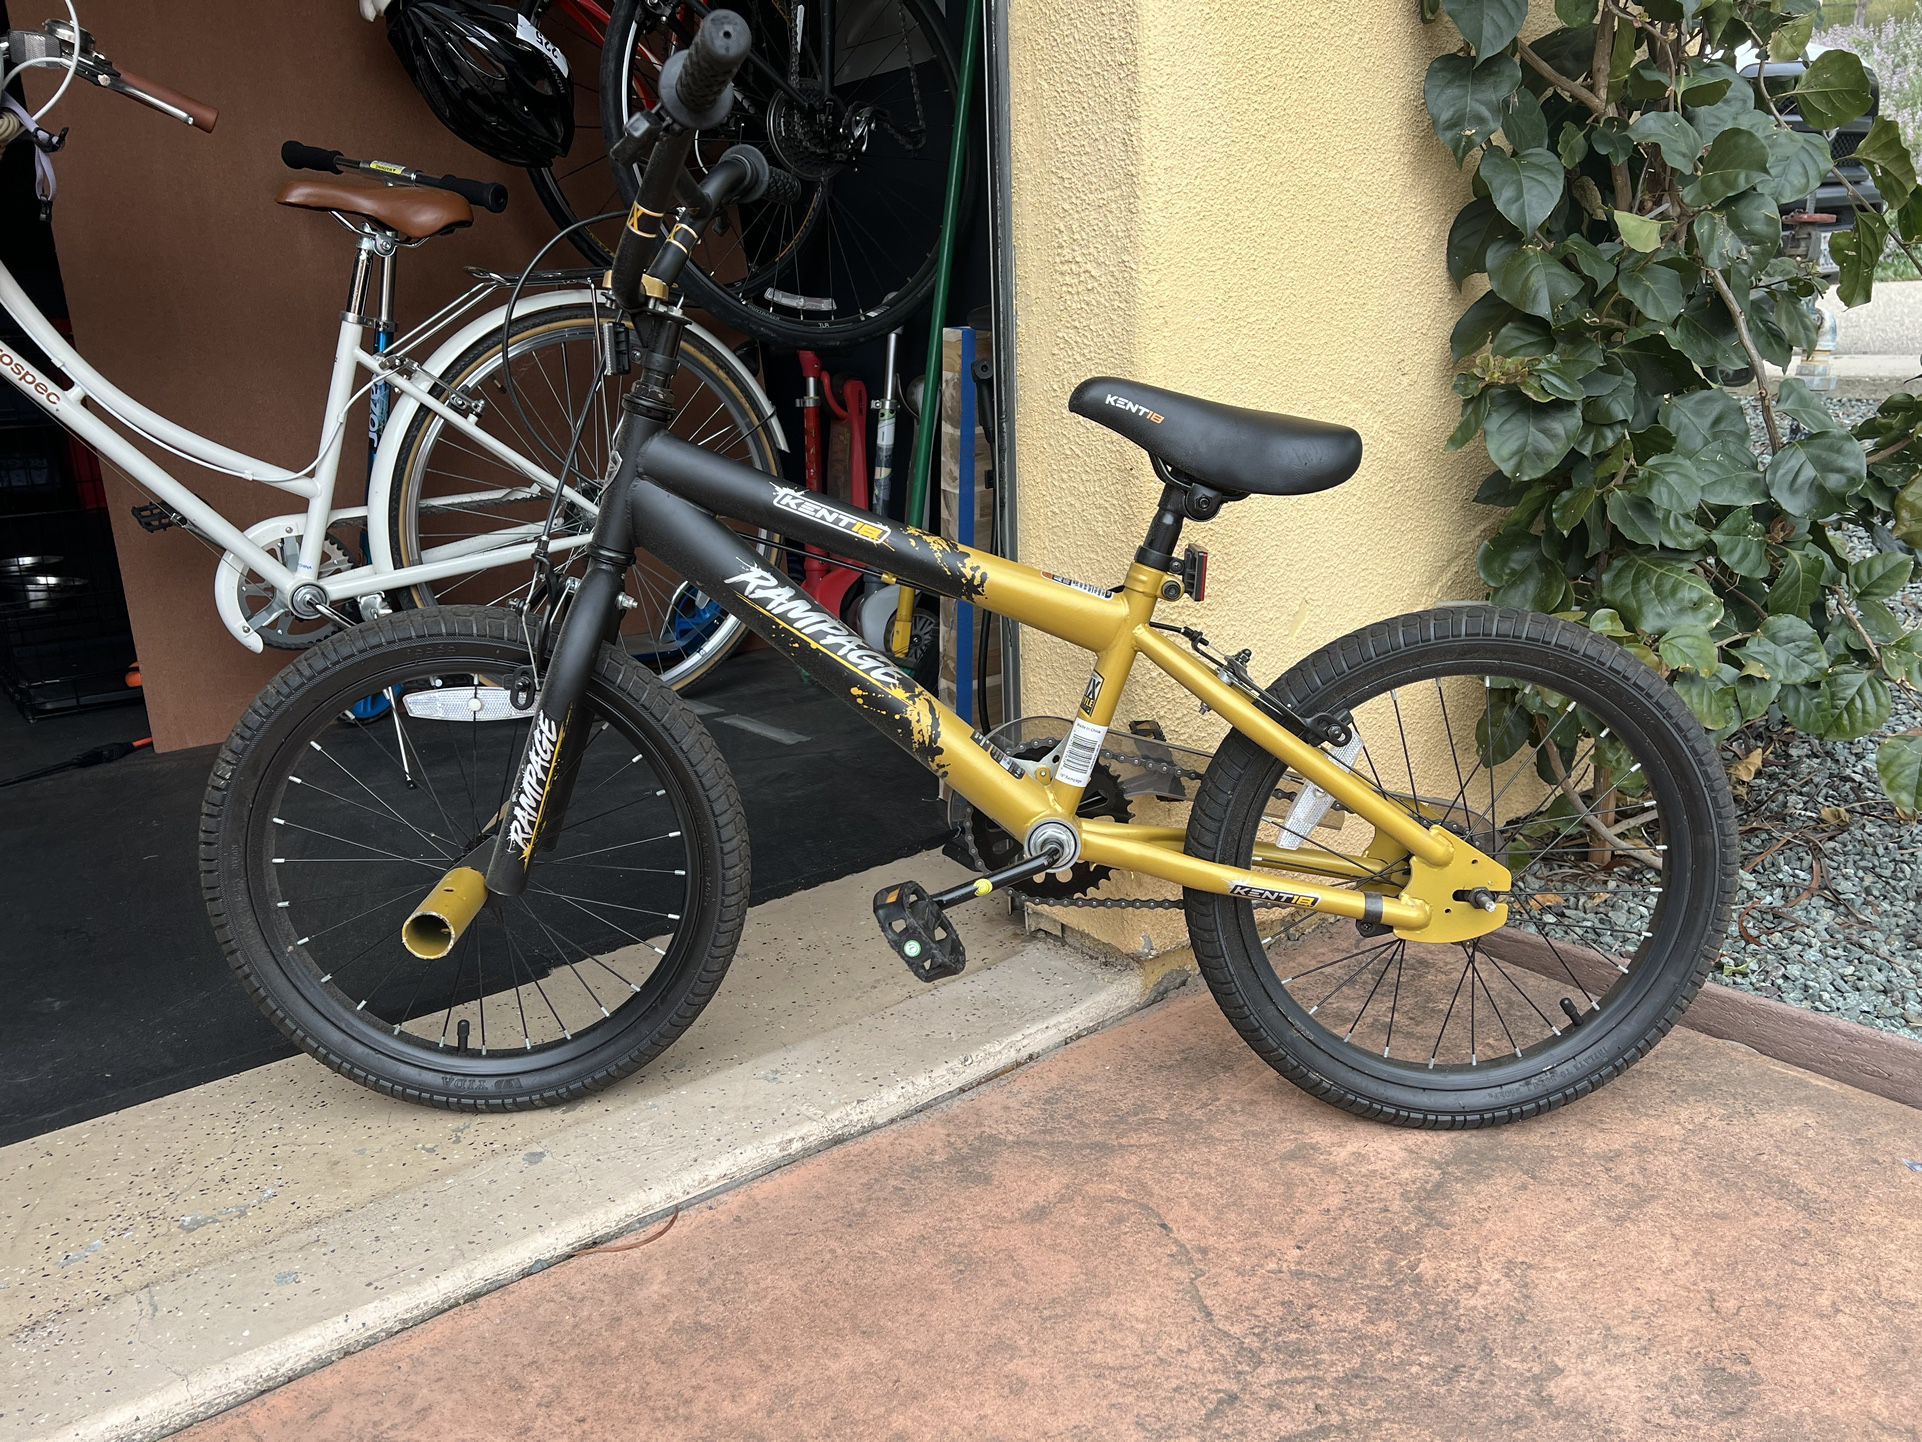 Kids 18” Bike 